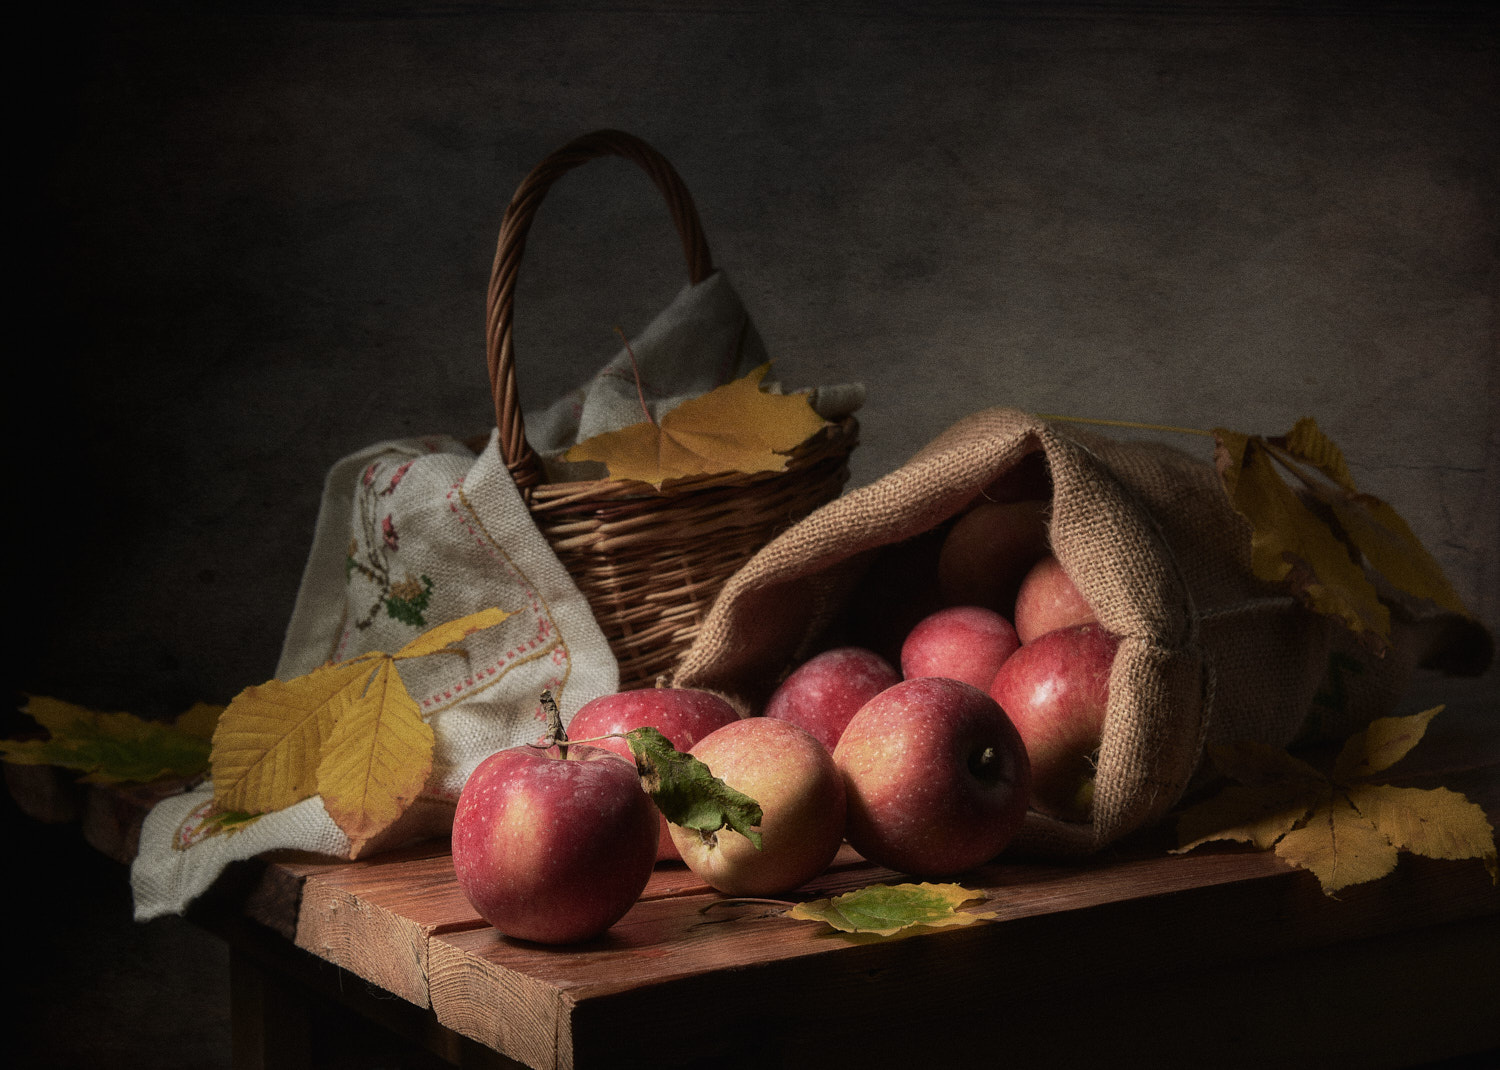 Яблоки из мешочка натюрморт композиция постановка сцена плоды еда фрукты яблоки урожай